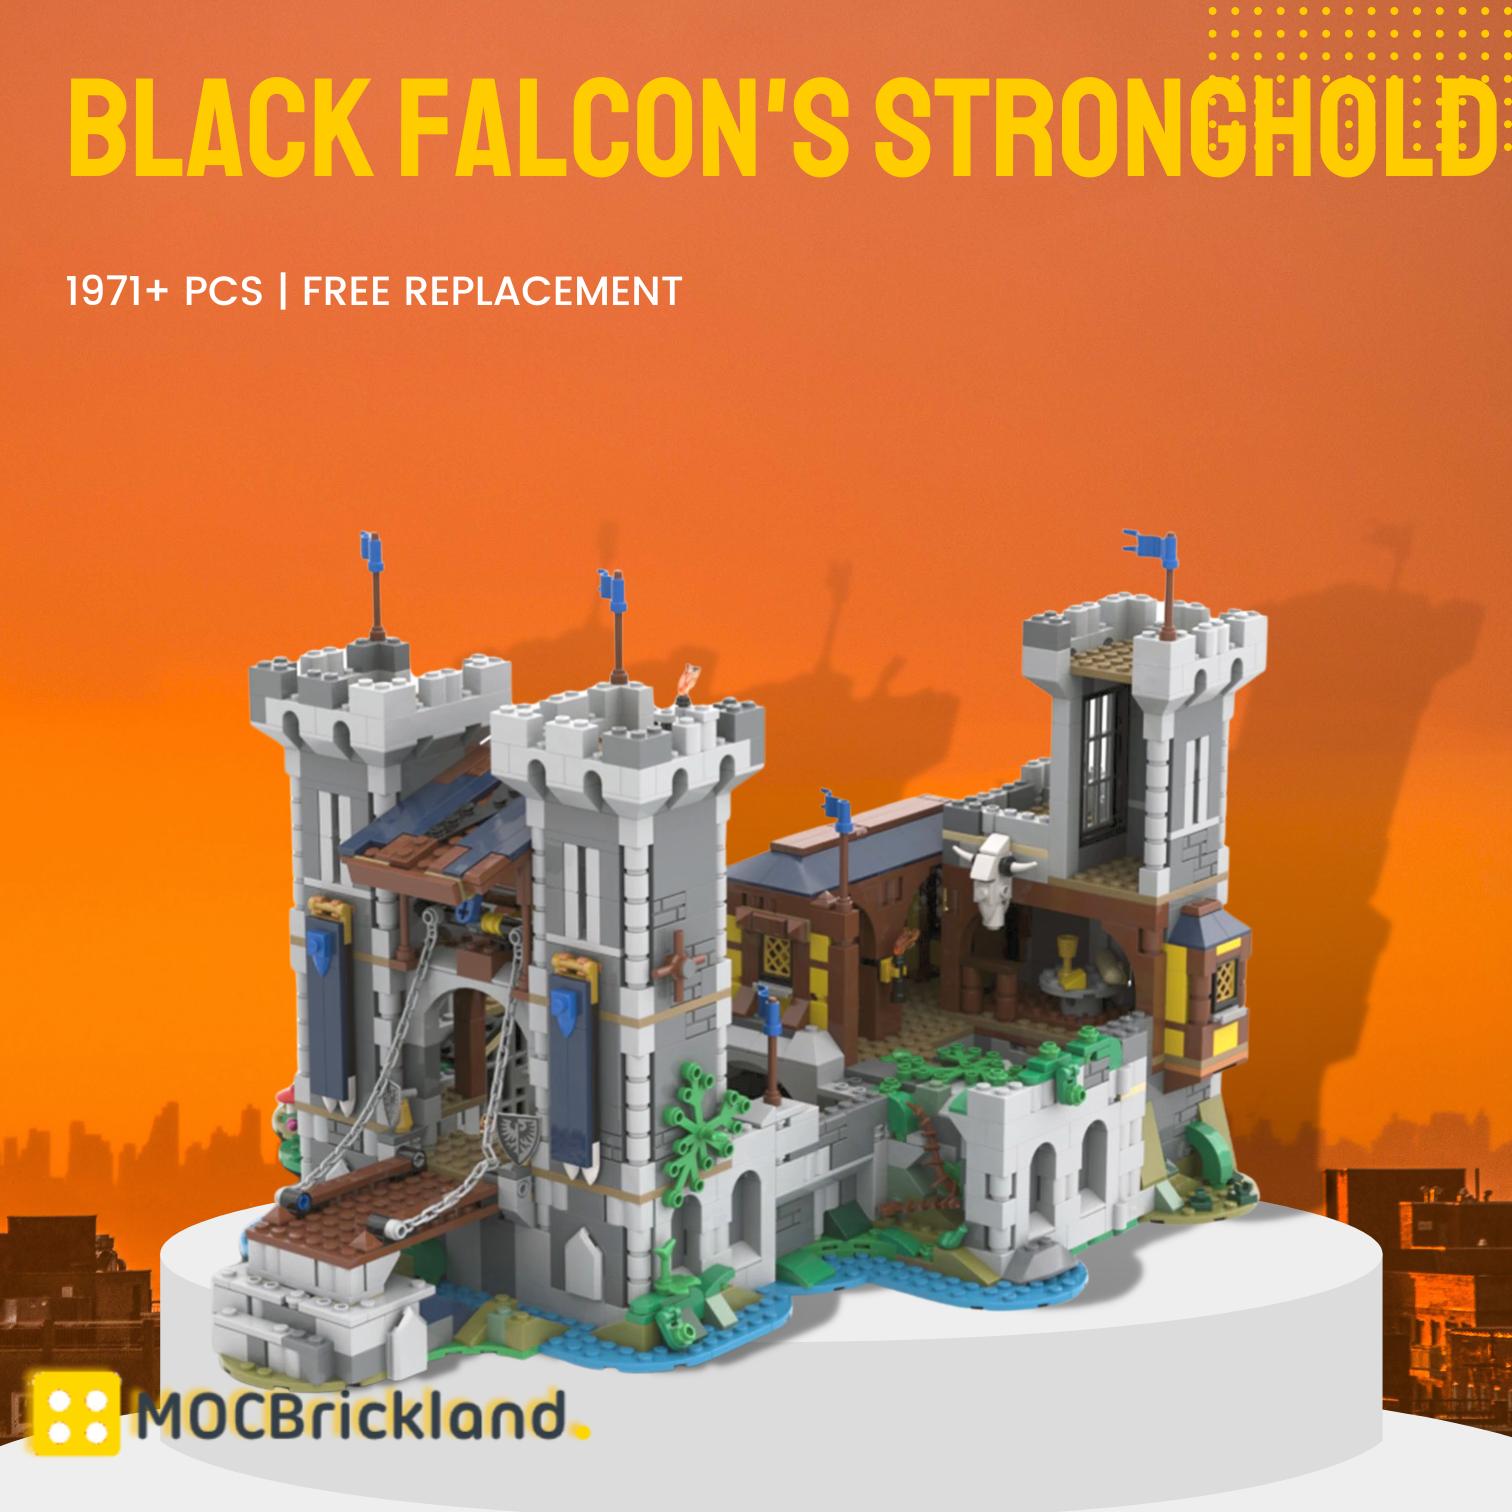 Black Falcon's Stronghold (bundle) 31120 1 Alt. Build Moc 116798